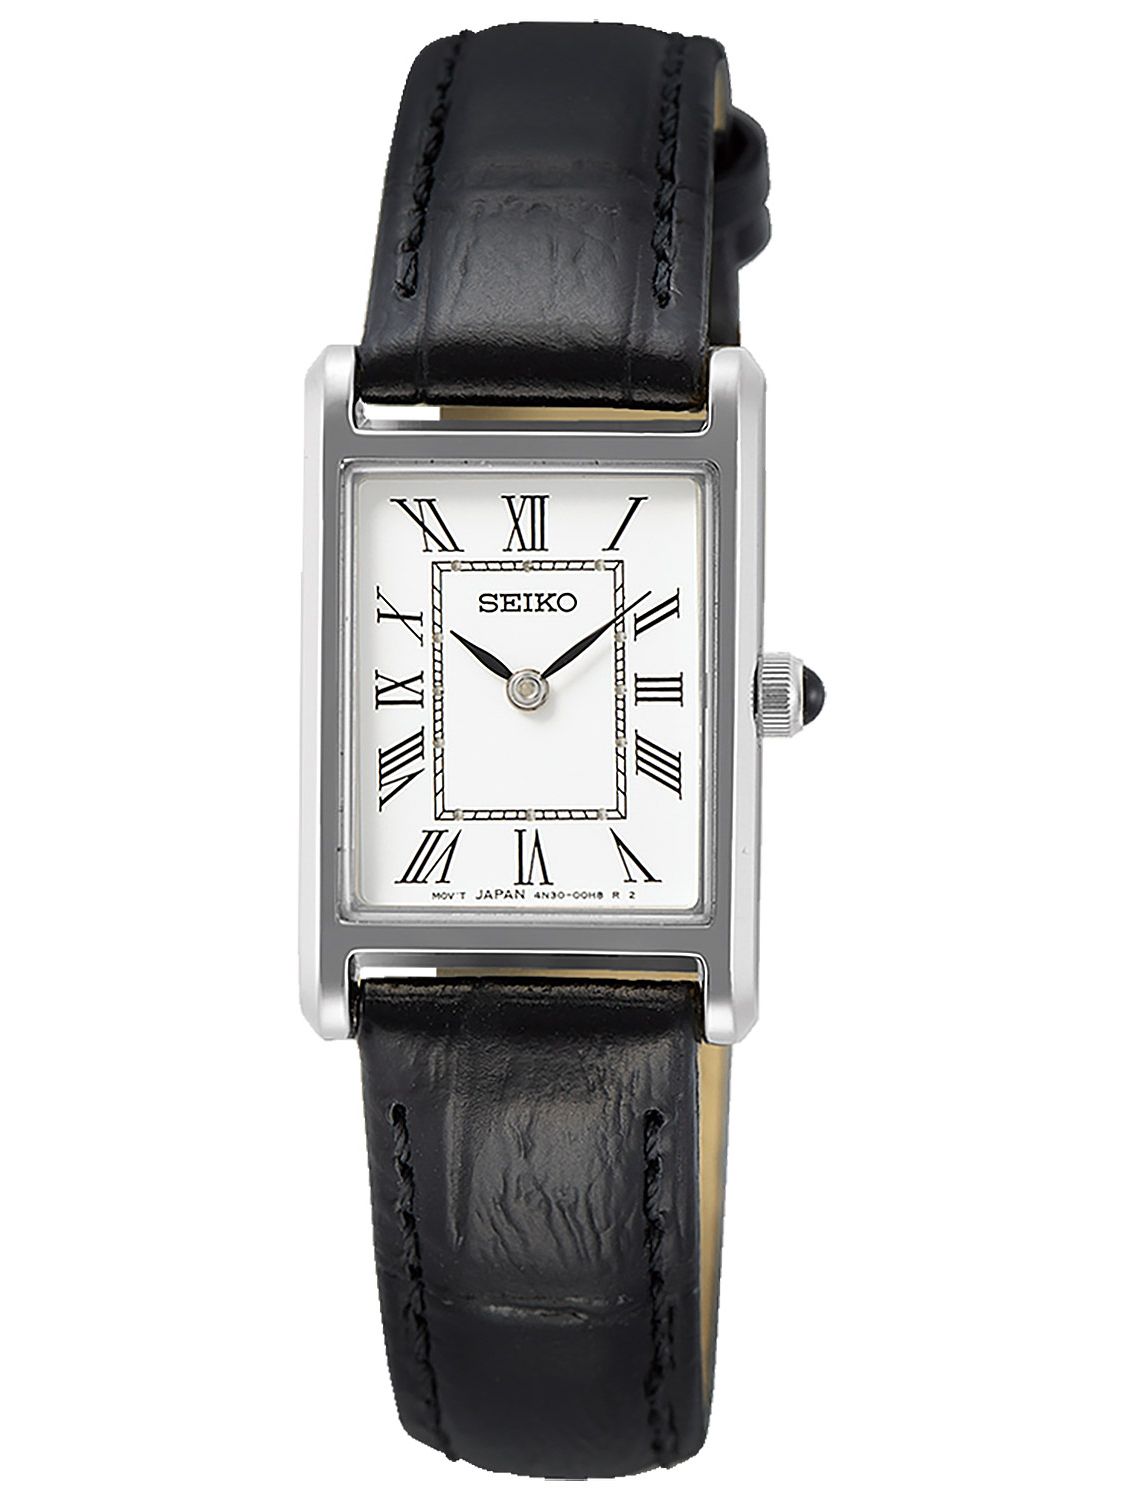 Seiko SWR053P1 Ladies' Wristwatch with Black Leather Strap